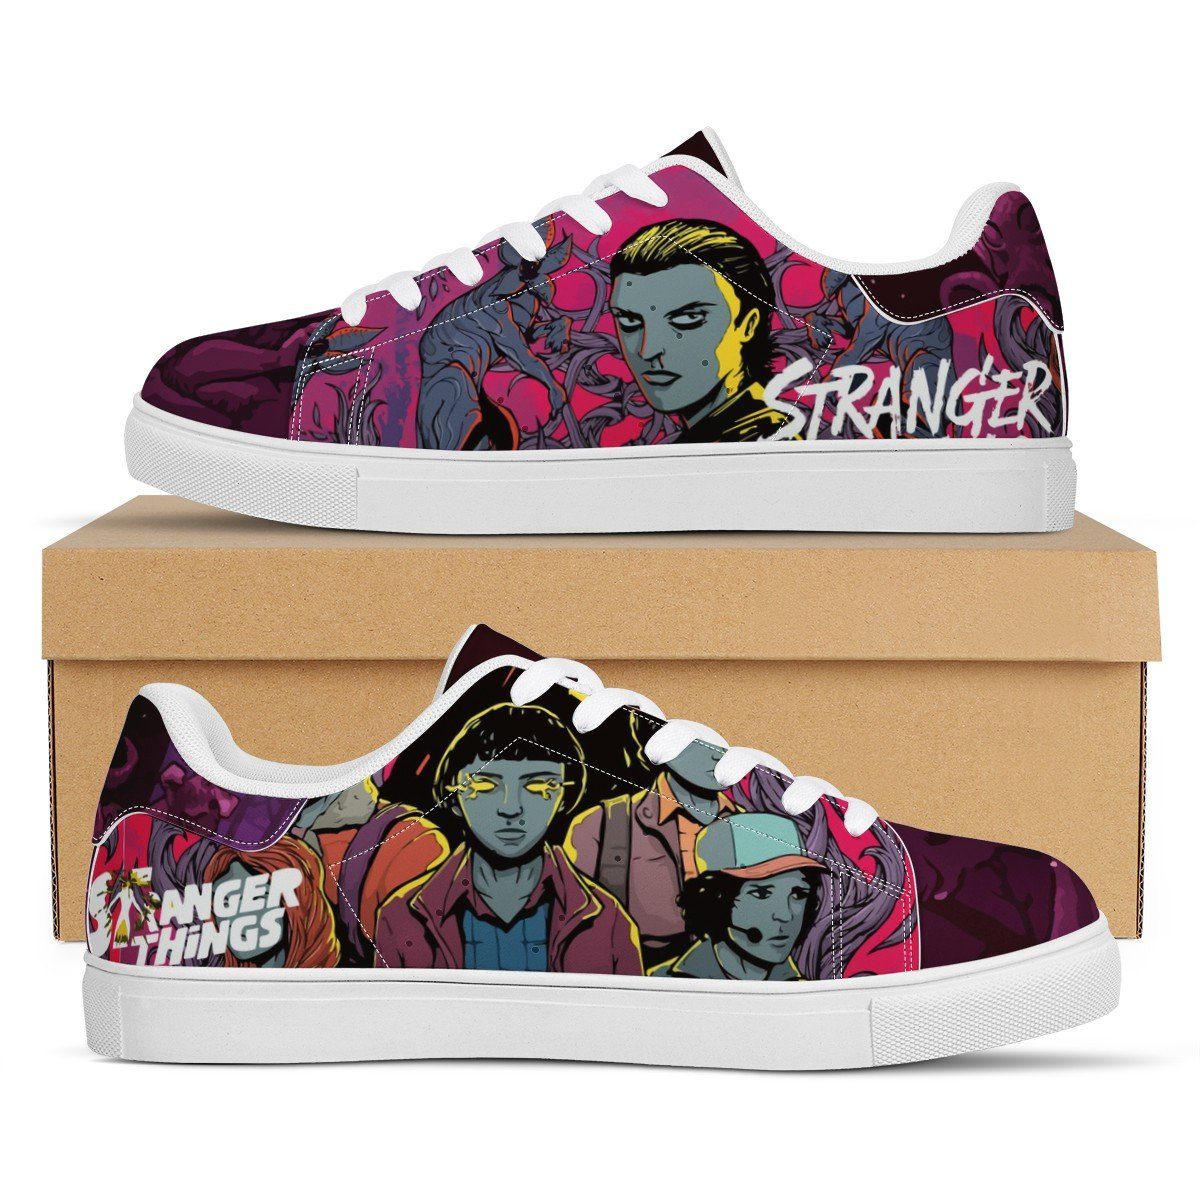 Stranger Things Low Top Sneaker Stan Smith, Horror, Stranger Things noxfan Women US5.5 (EU36) 